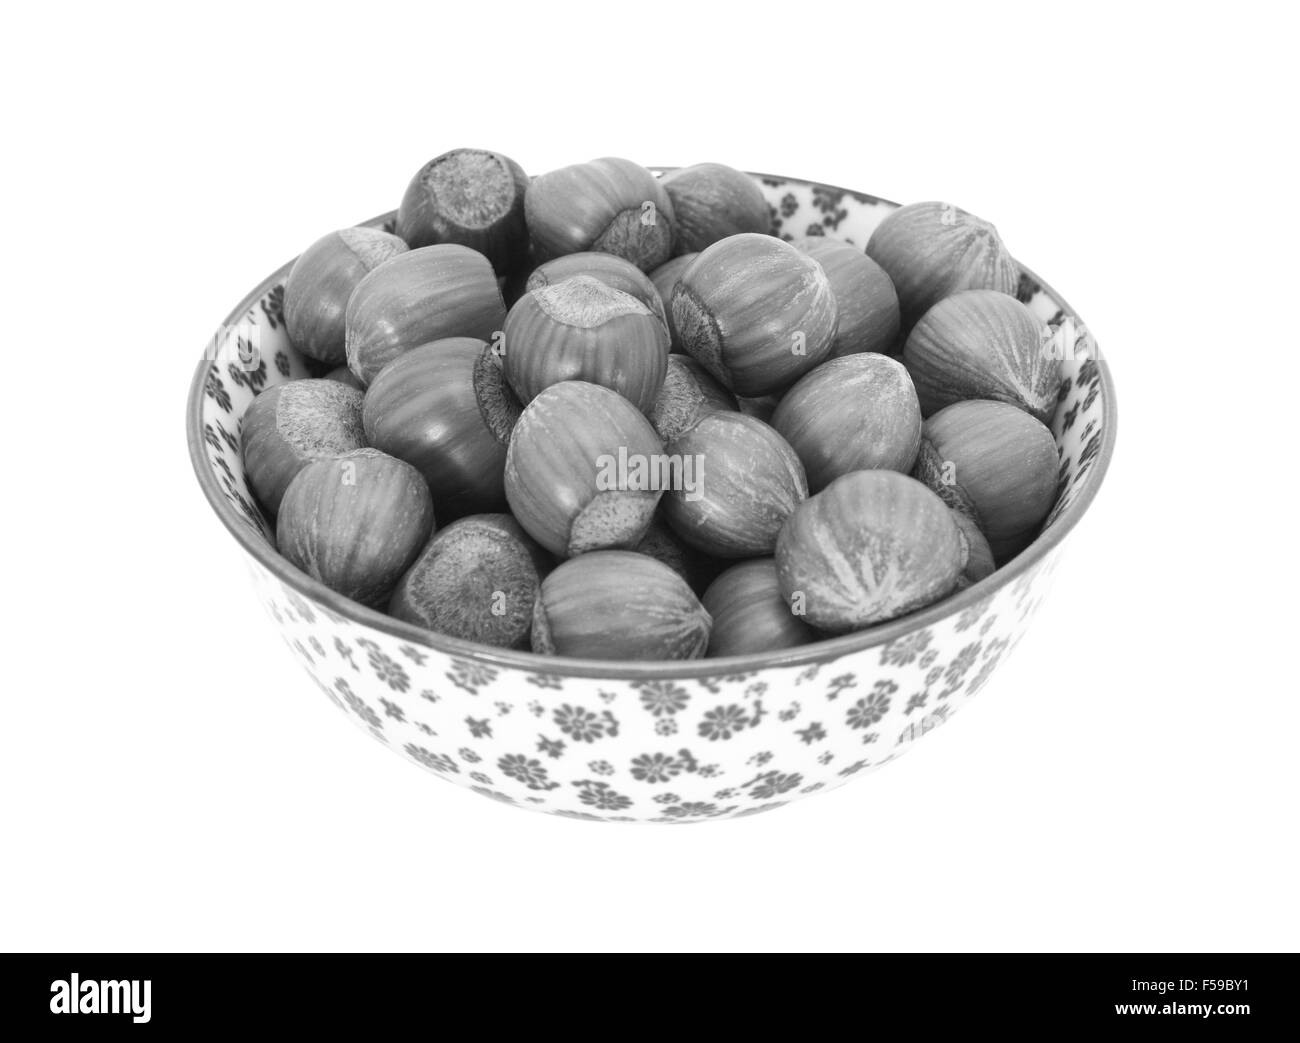 Les noisettes en coque, dans un bol en porcelaine avec un motif fleuri, isolé sur fond blanc - traitement monochrome Banque D'Images